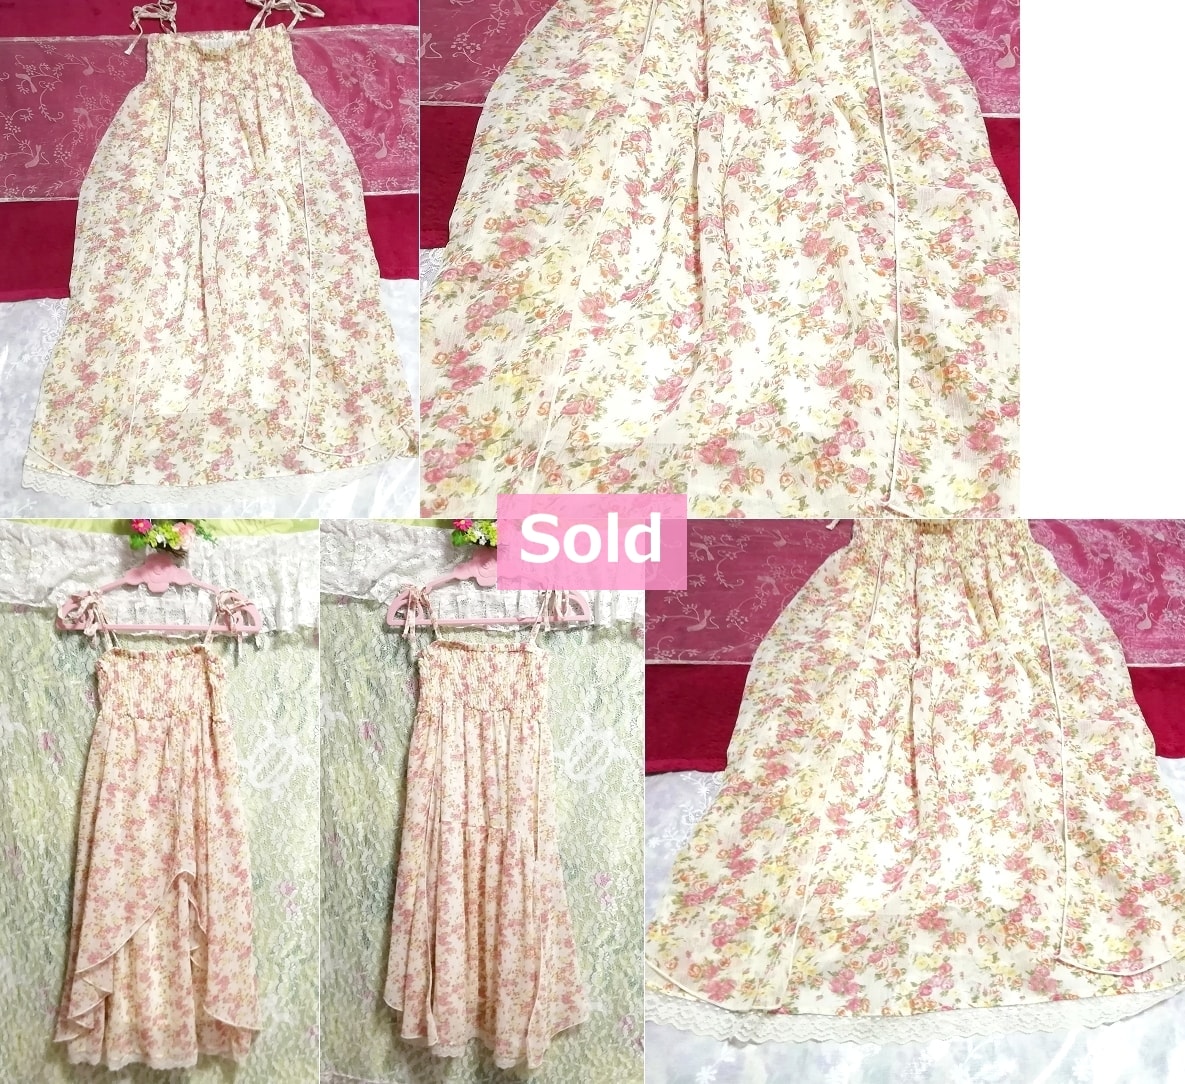 플로럴 화이트 페일 핑크 플로럴 패턴 시폰 네글리제 나이트가운 캐미솔 드레스, 패션, 숙녀 패션, 캐미솔